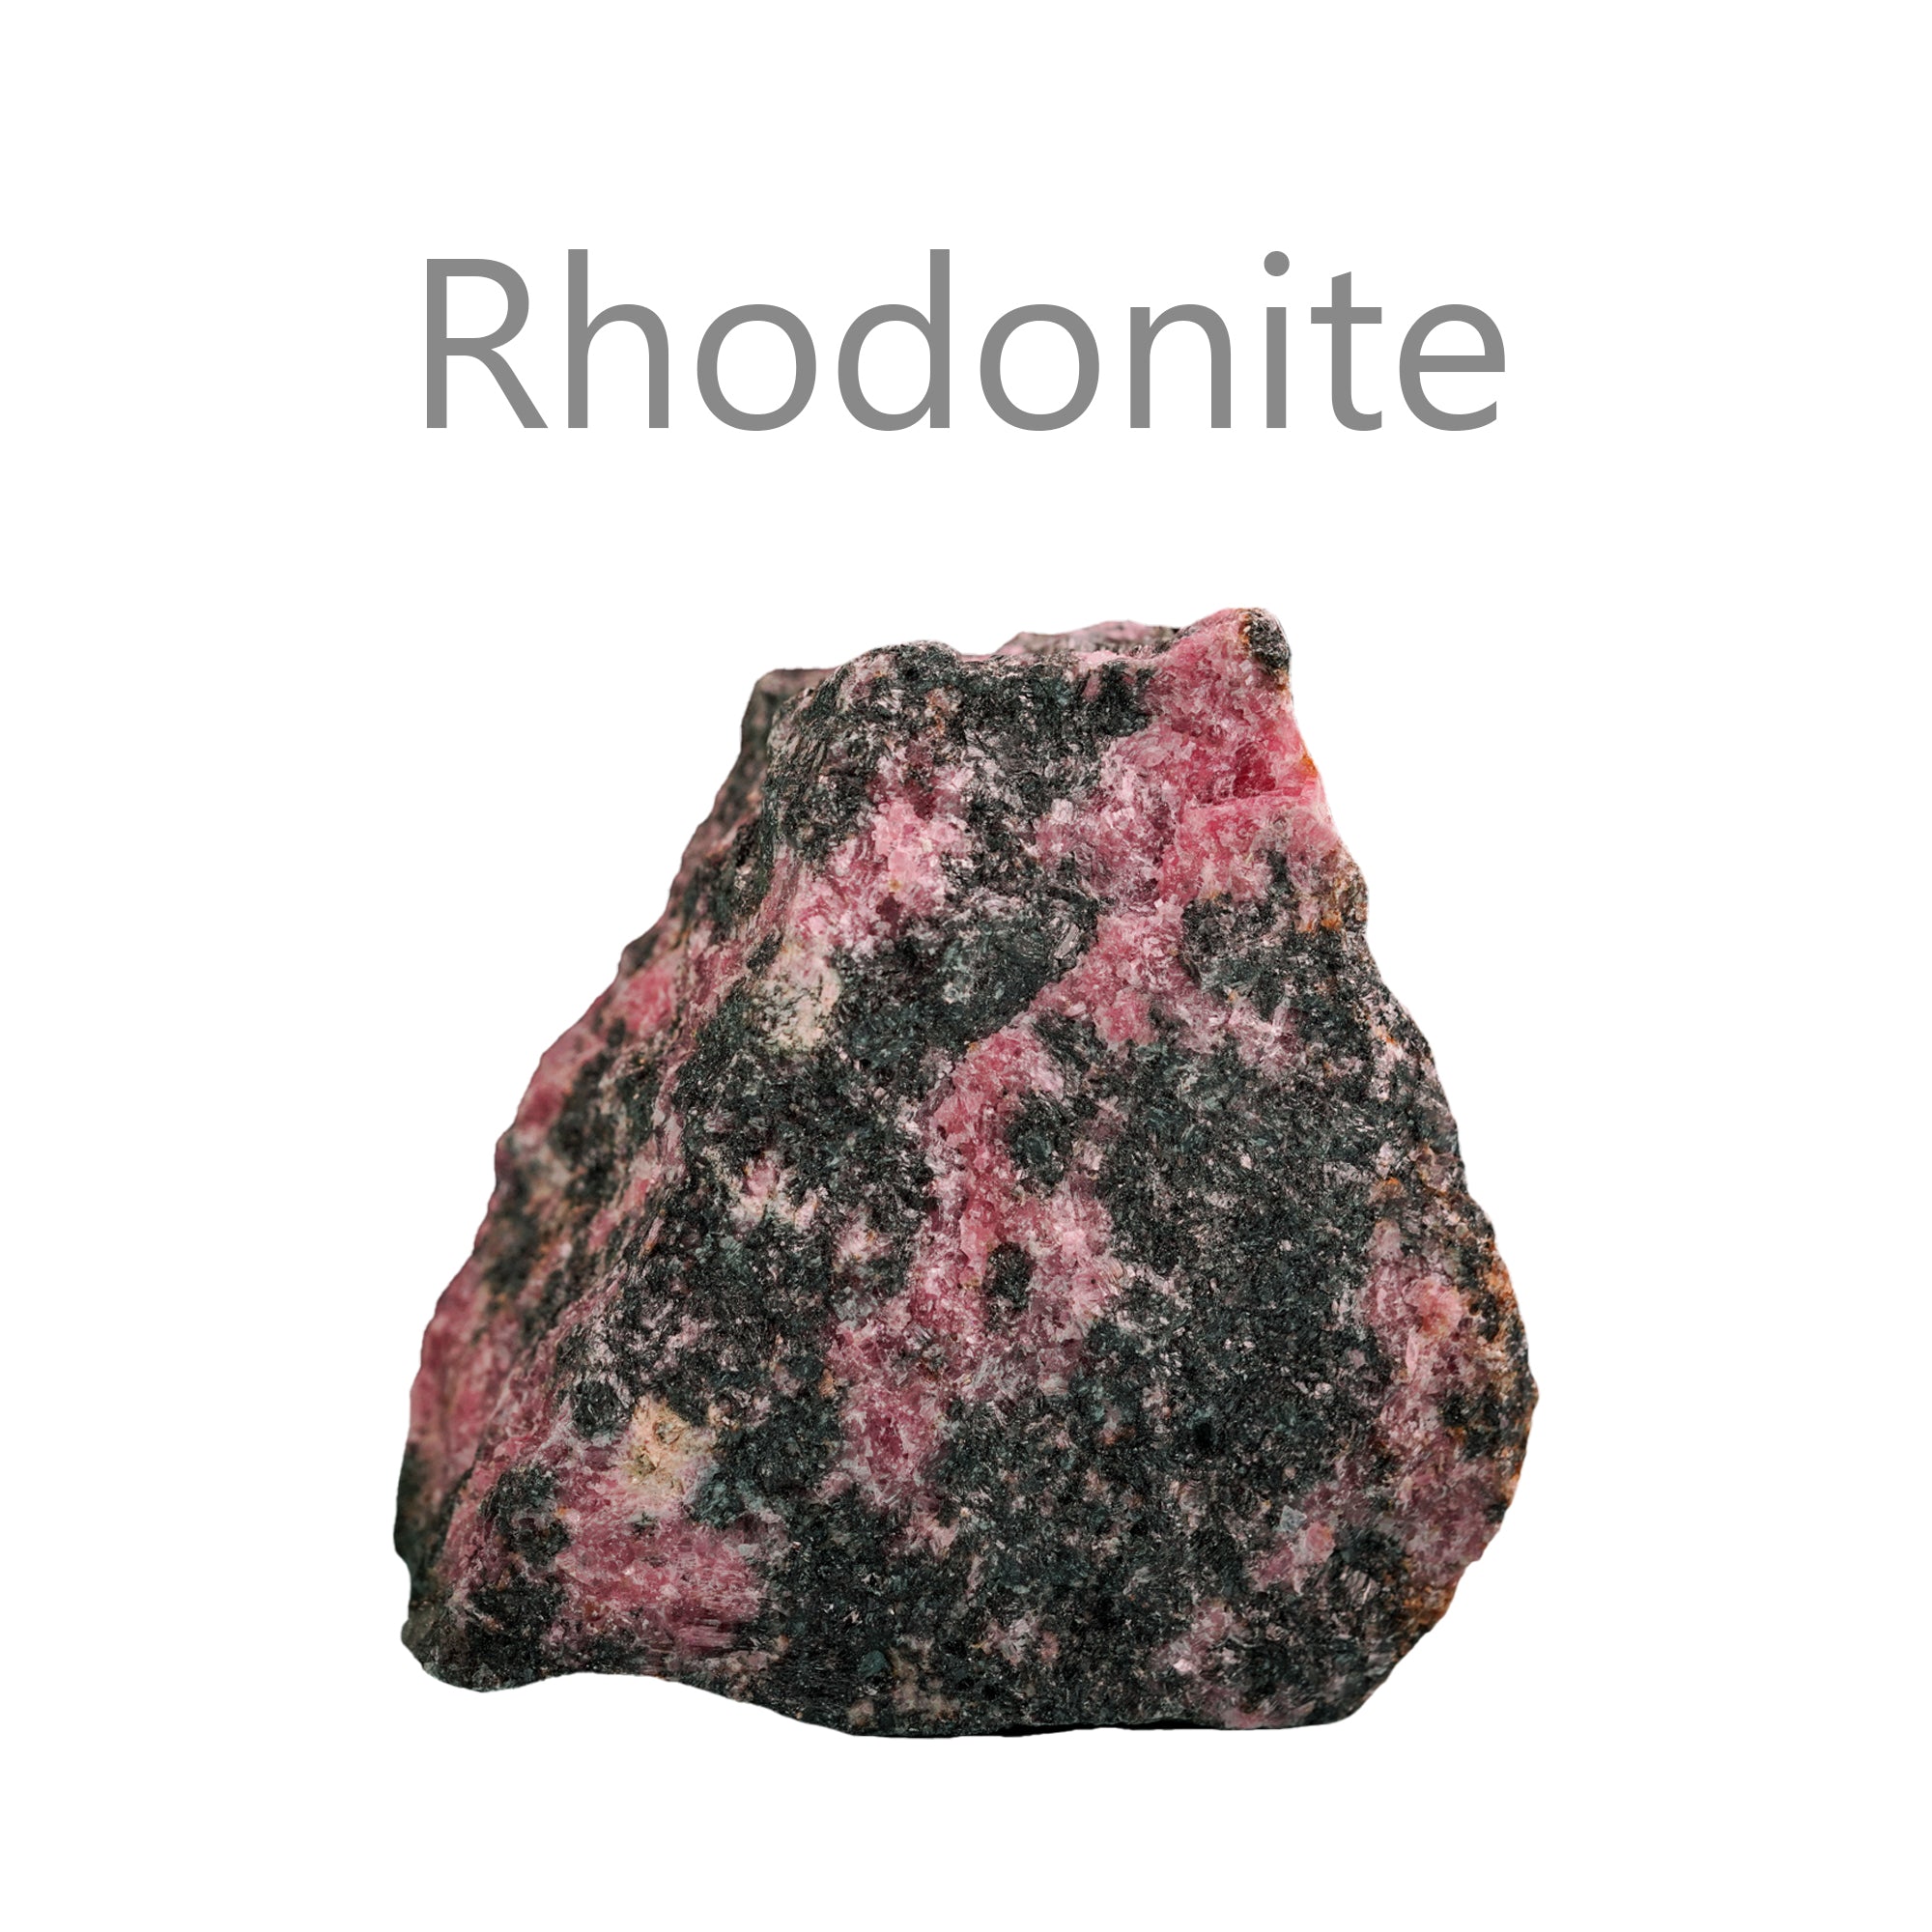 rhodonite